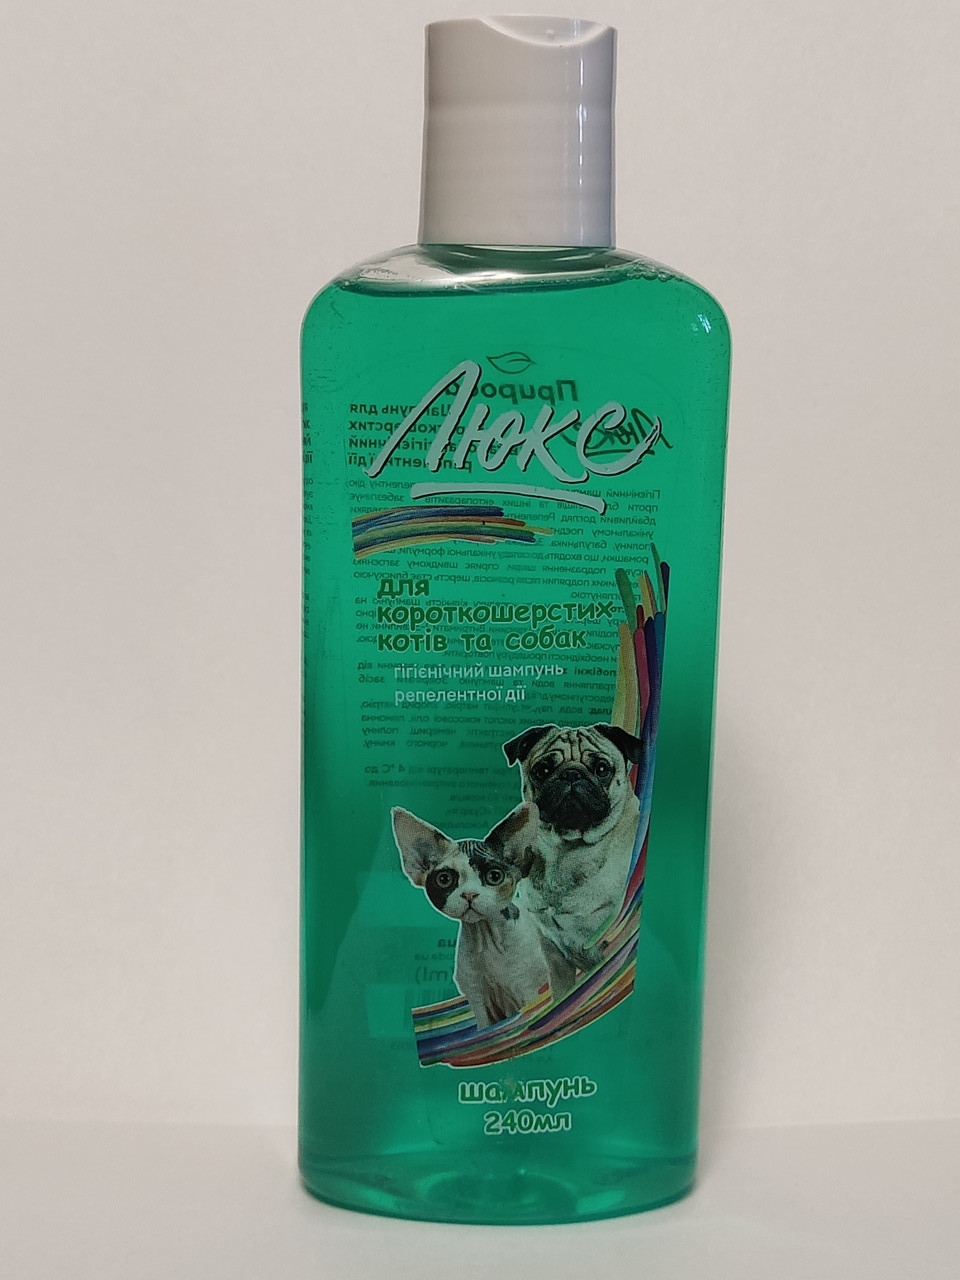 Фото - Косметика для собаки Priroda Шампунь Природа Люкс для короткошерстных собак и кошек гигиенический, прот 